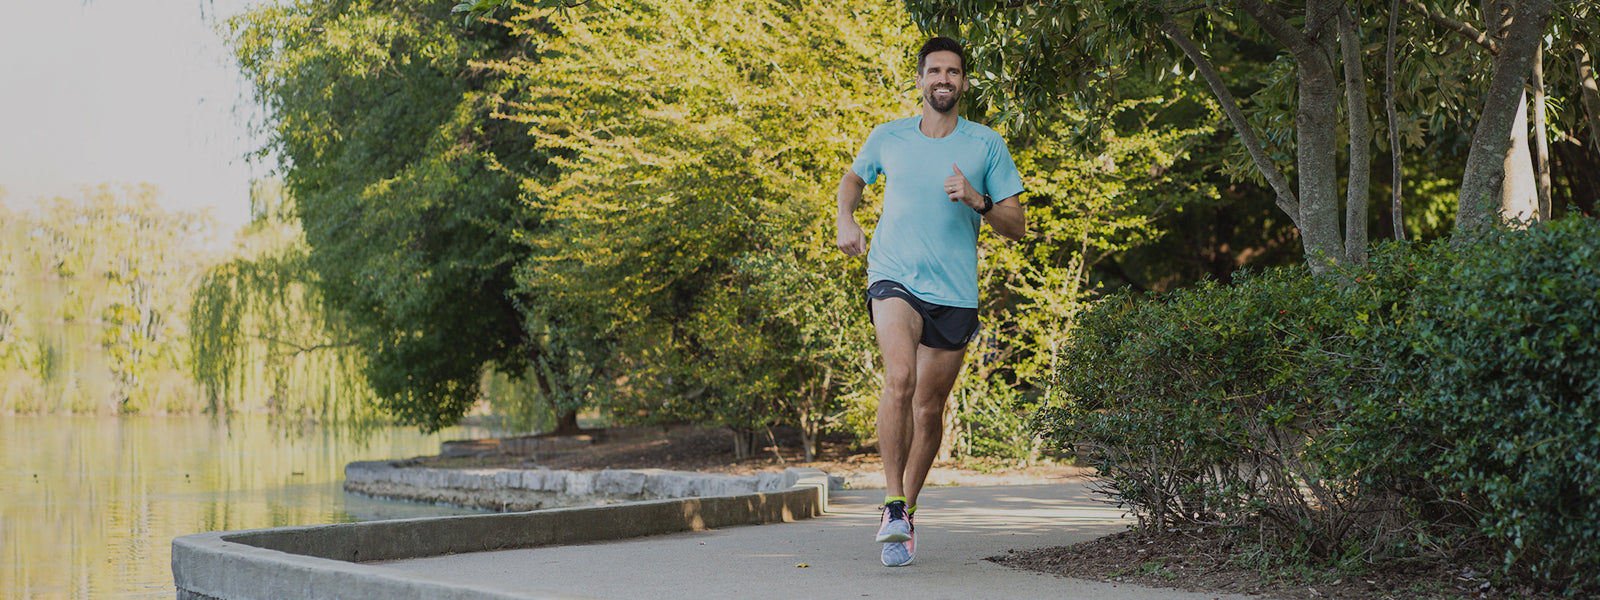 Men's Running Socks header image, man running